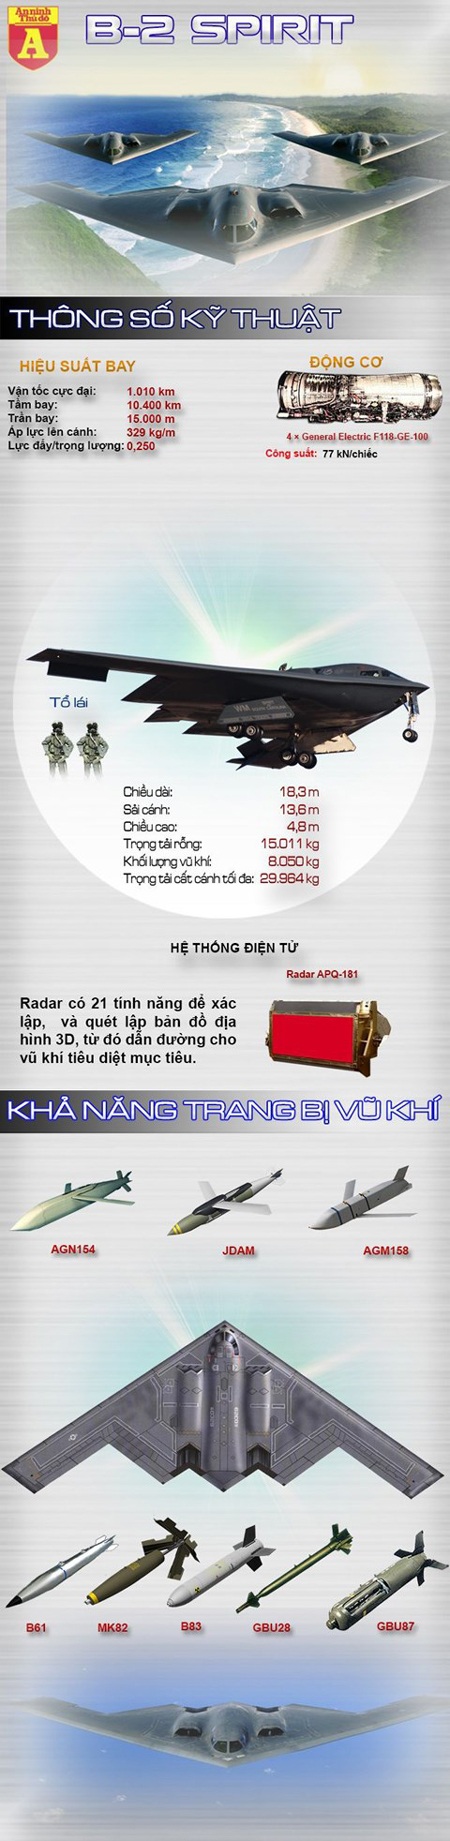 [Infographic] B-2 Spirit – Siêu máy bay ném bom chiến lược "khủng" nhất thế giới - 1